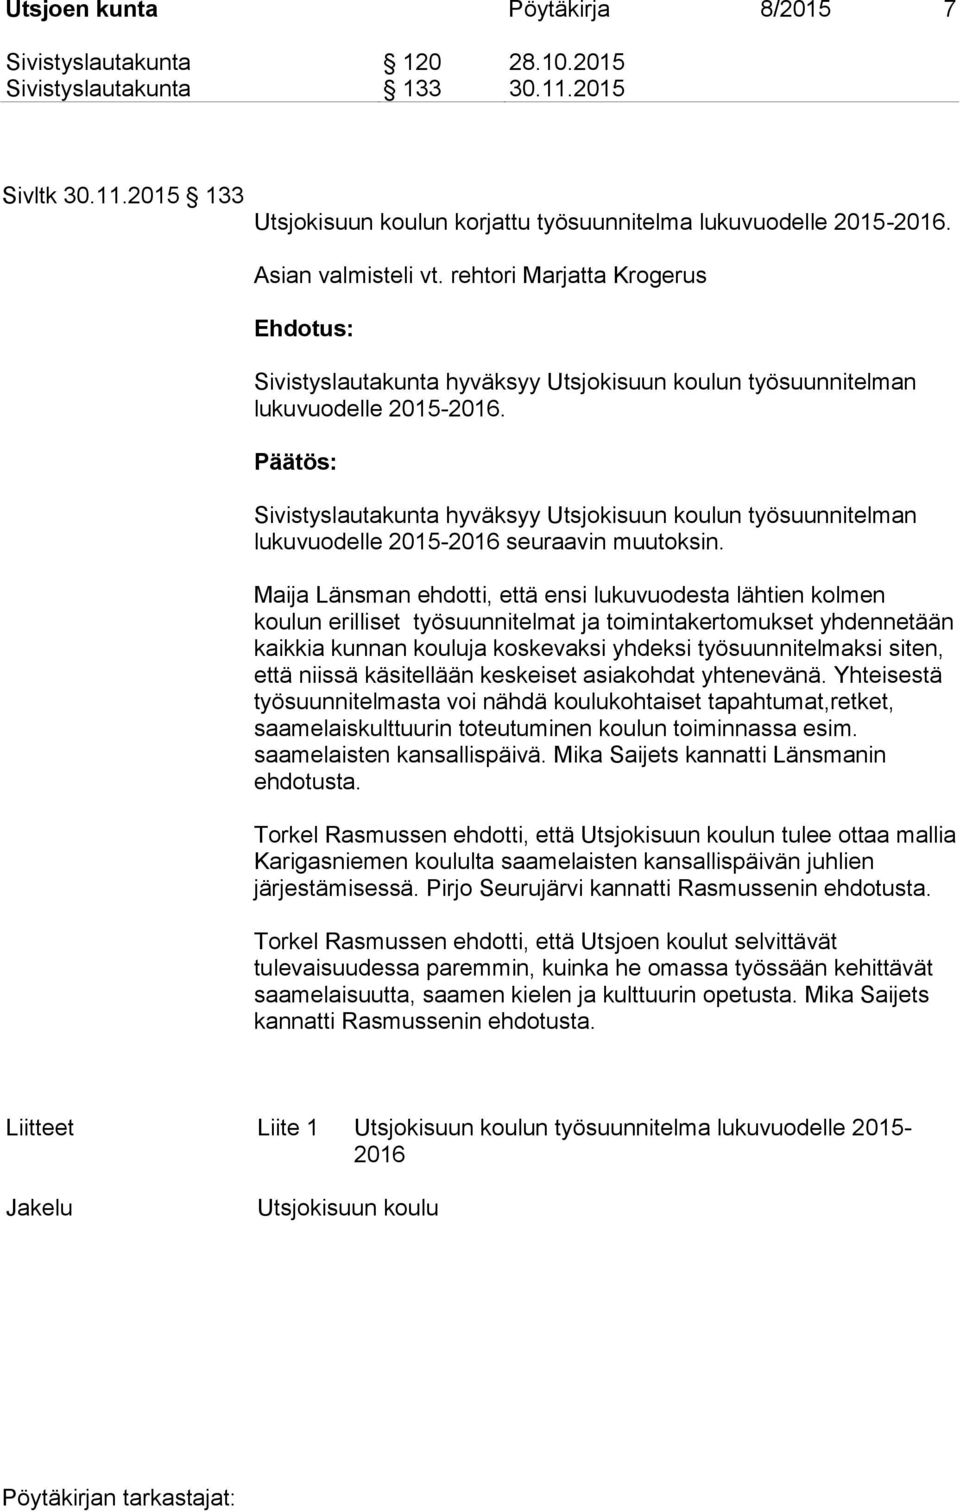 Sivistyslautakunta hyväksyy Utsjokisuun koulun työsuunnitelman lukuvuodelle 2015-2016 seuraavin muutoksin.